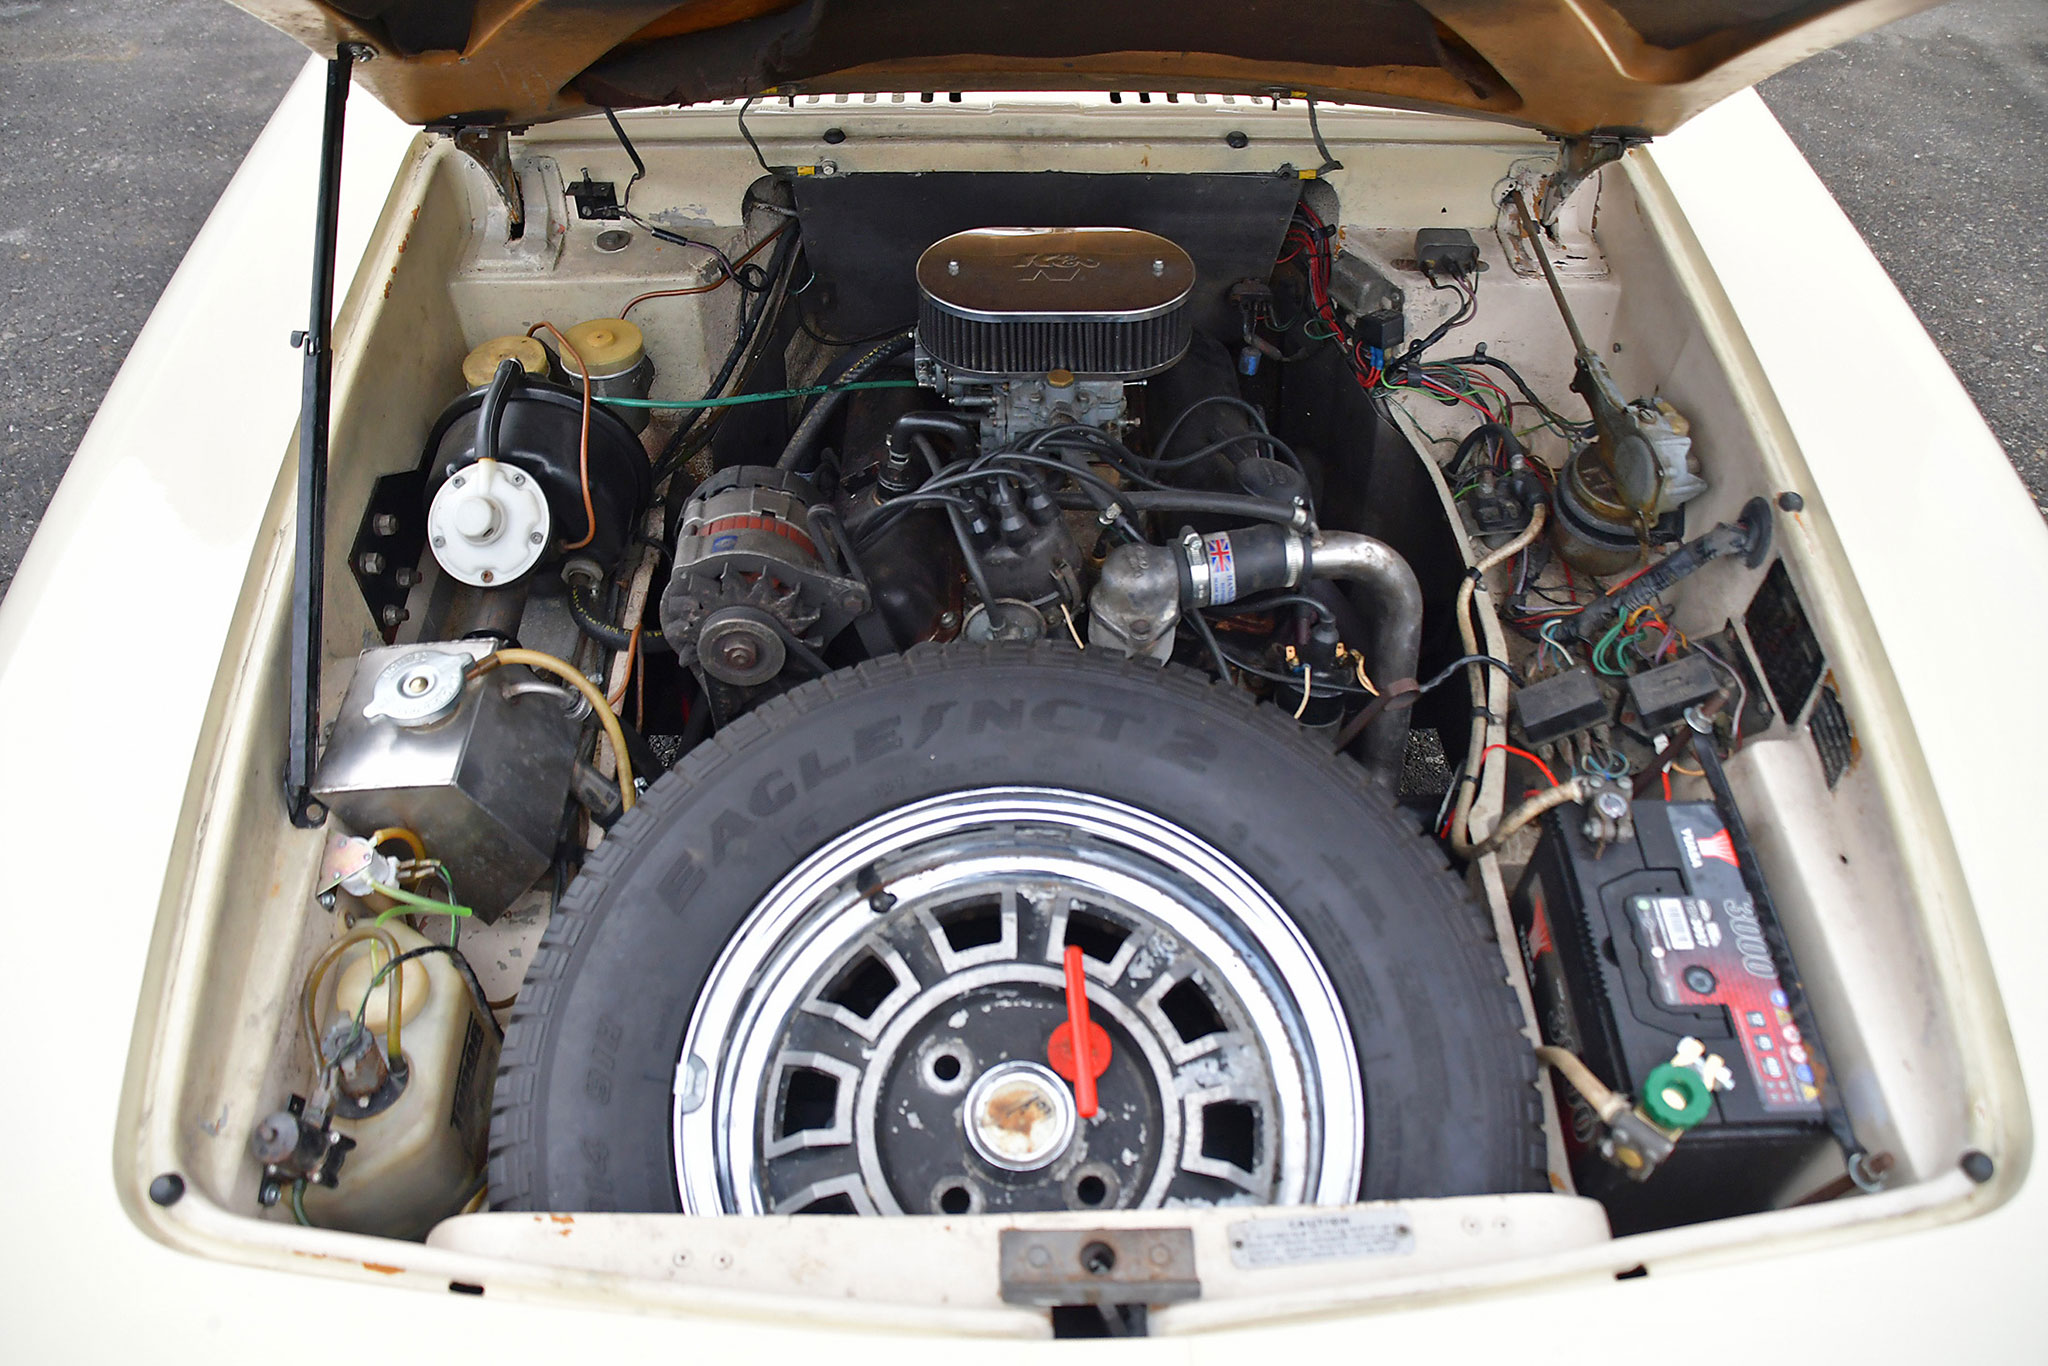 1971 Reliant Scimitar GTE SE5 – moteur de 2994 cm³ boîte 4 rapports overdrive et volant à droite tout pour rouler différent.